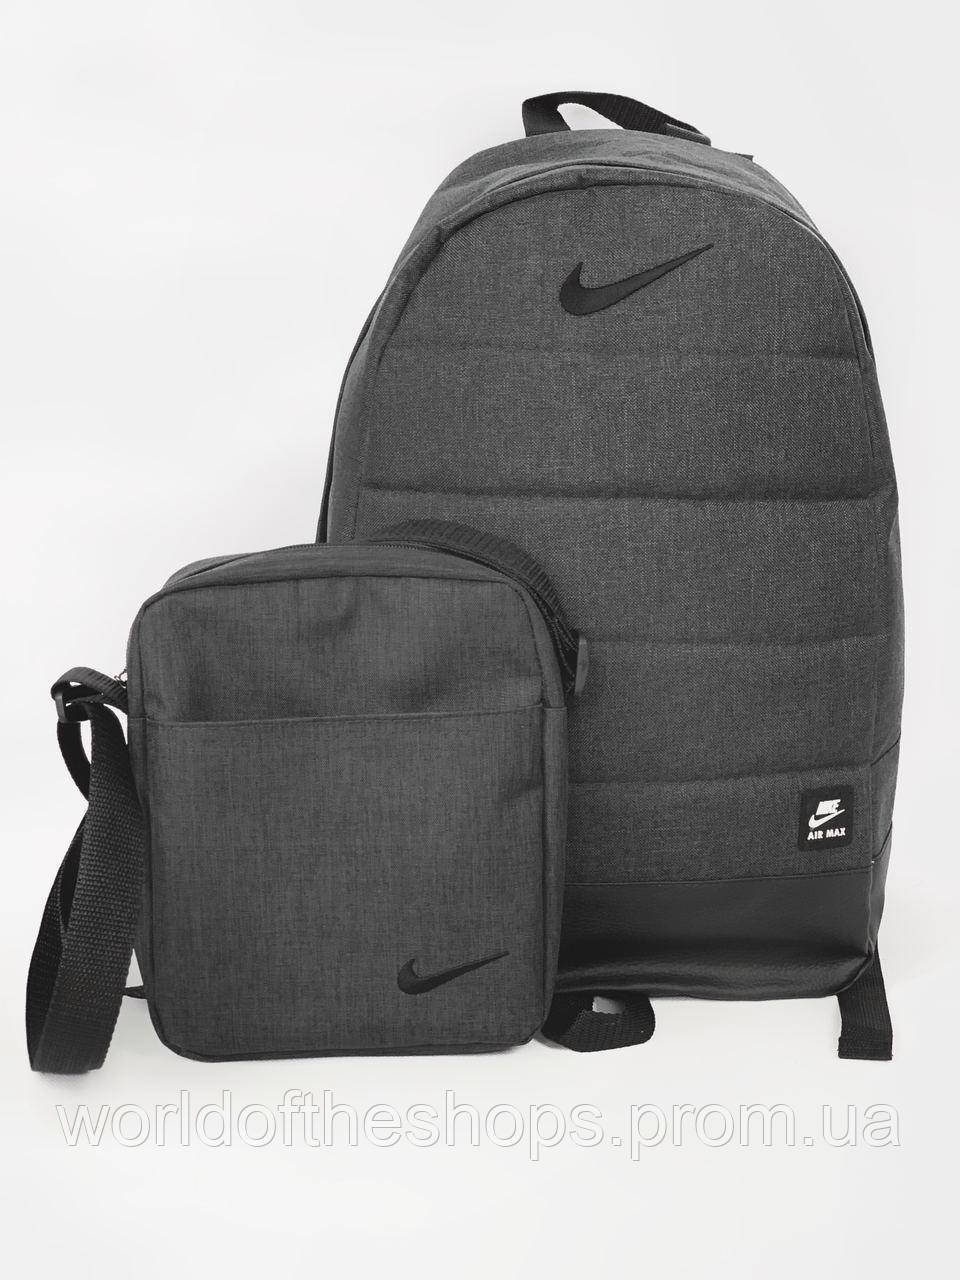 

Рюкзак + Барсетка городской Мужской | Женский | Детский, для ноутбука Nike (Найк) спортивный комплект, Серый